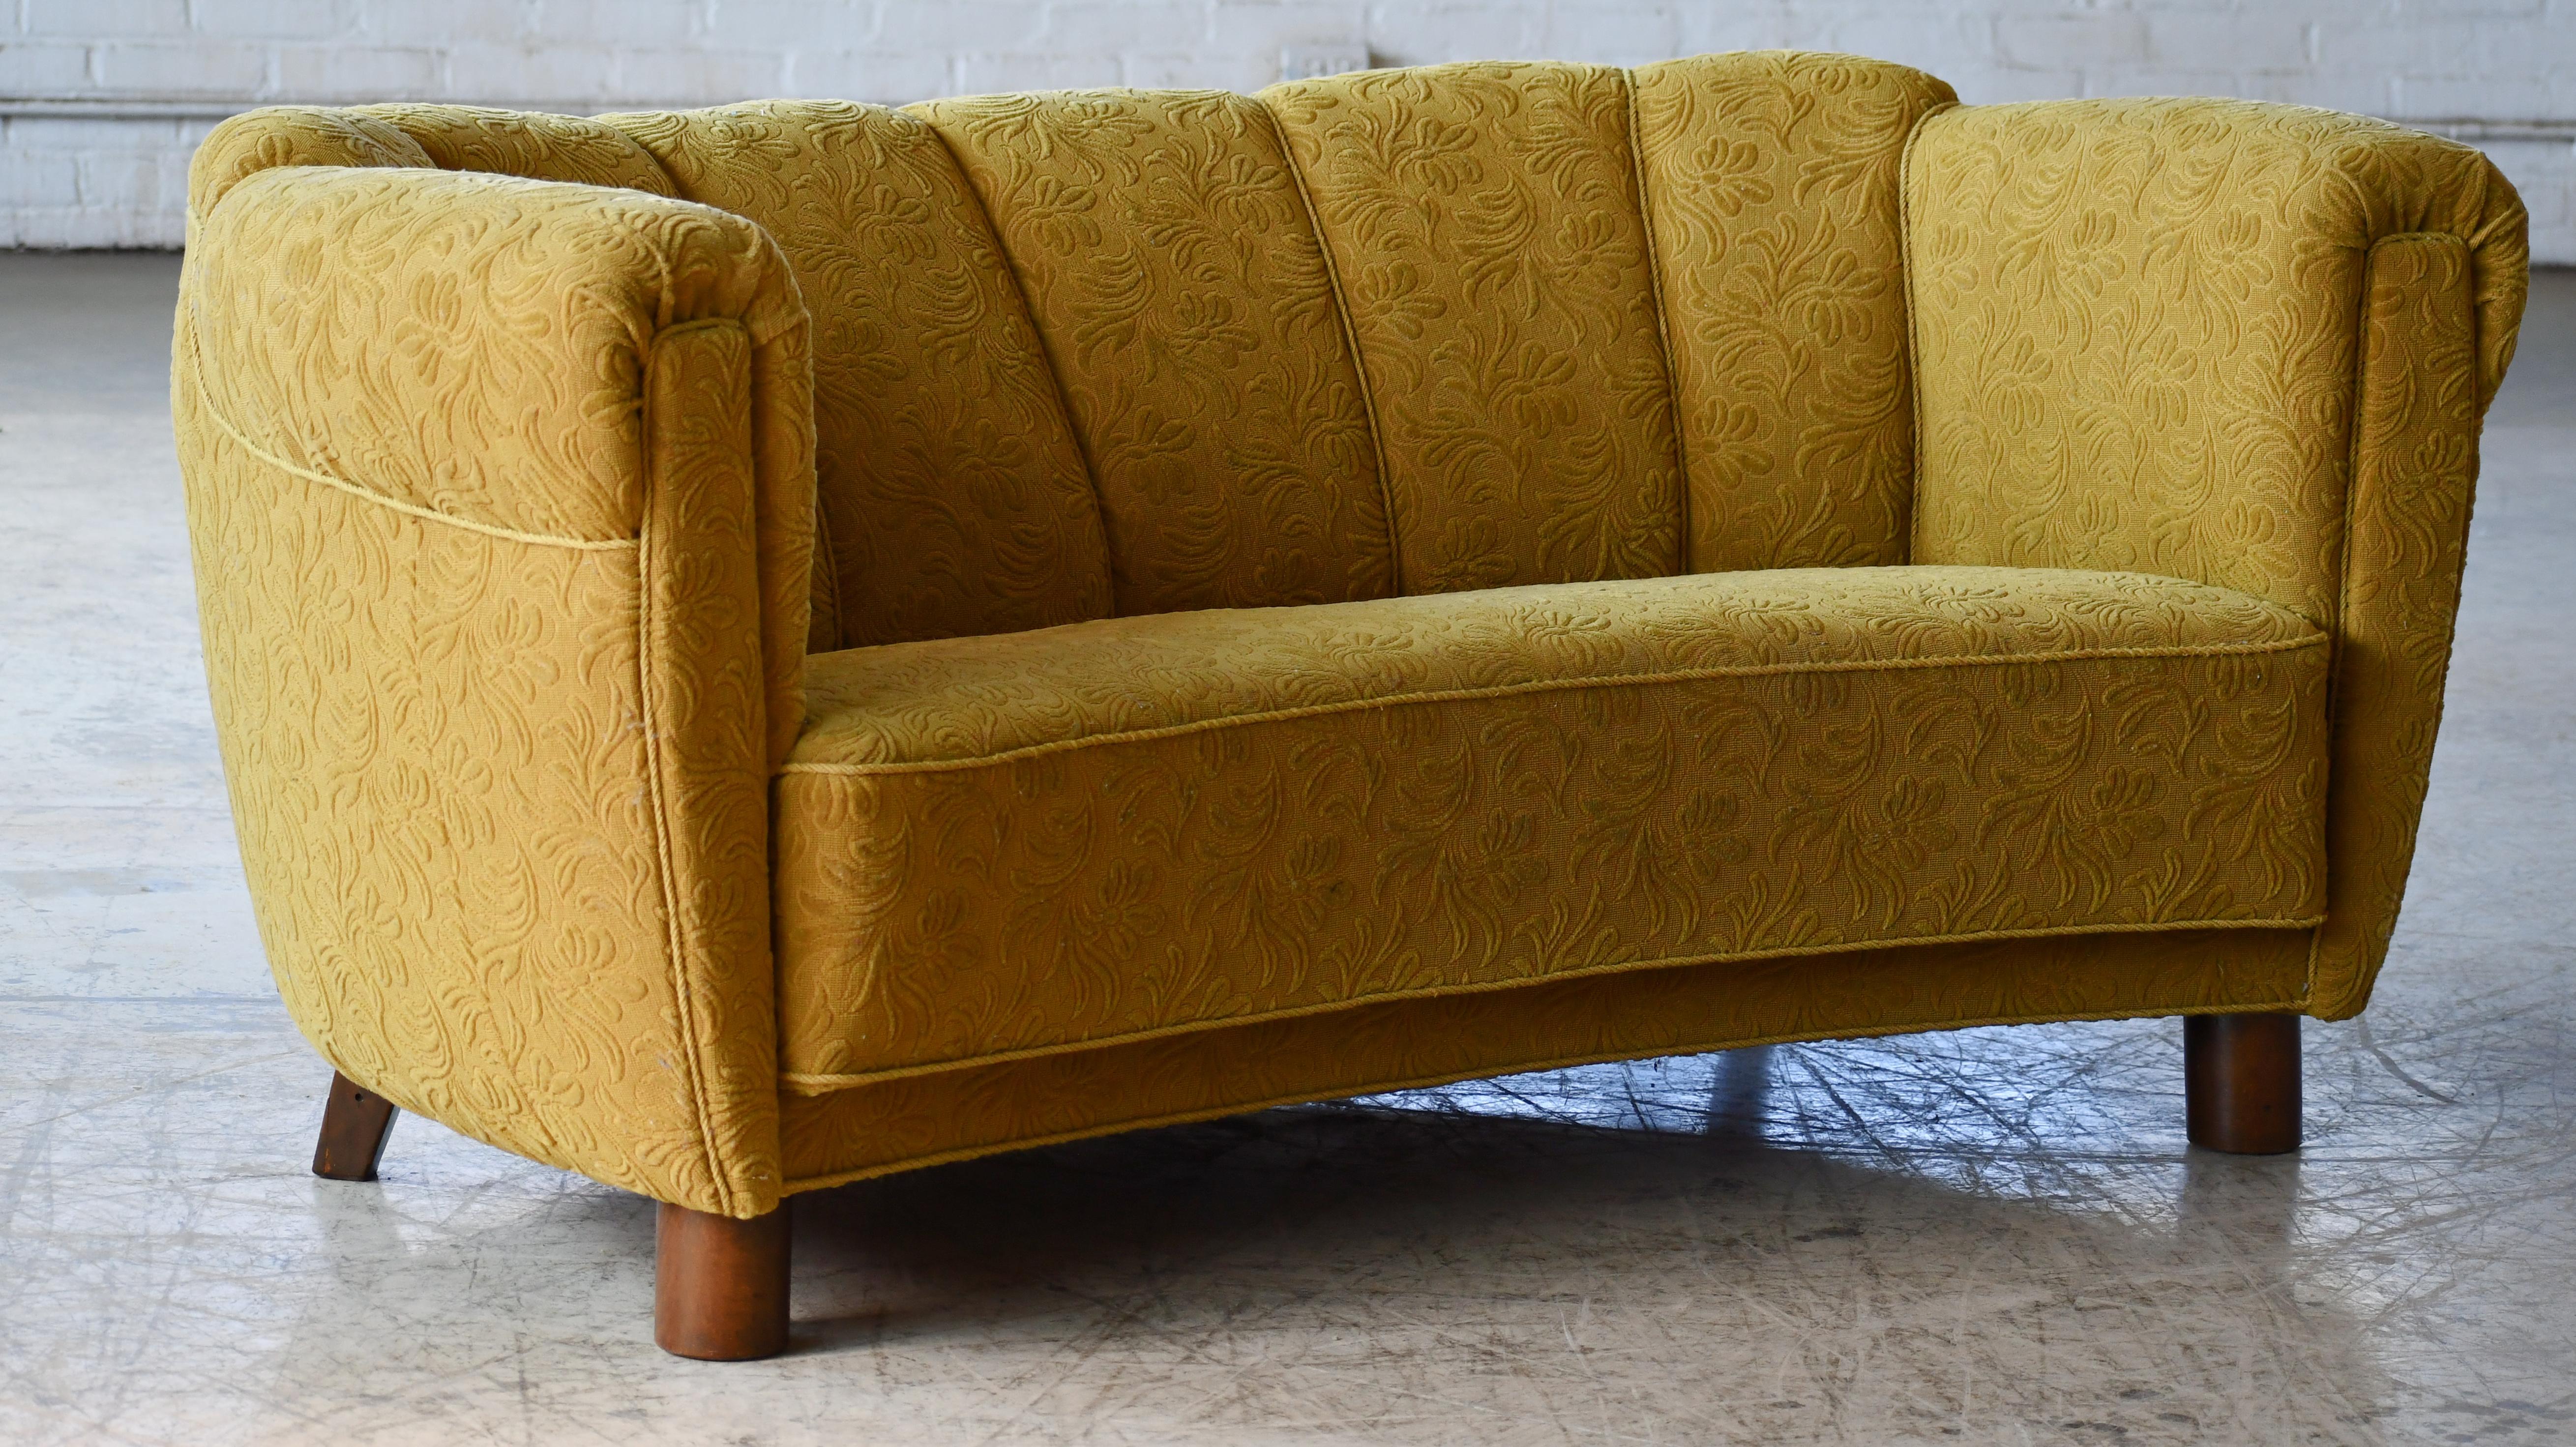 Magnifique canapé danois incurvé ou Banana sofa comme les Danois les appellent. Ce canapé est un peu inhabituel par rapport aux autres canapés de l'époque car il possède un dossier surélevé, un détail que l'on retrouve parfois dans l'Art déco.